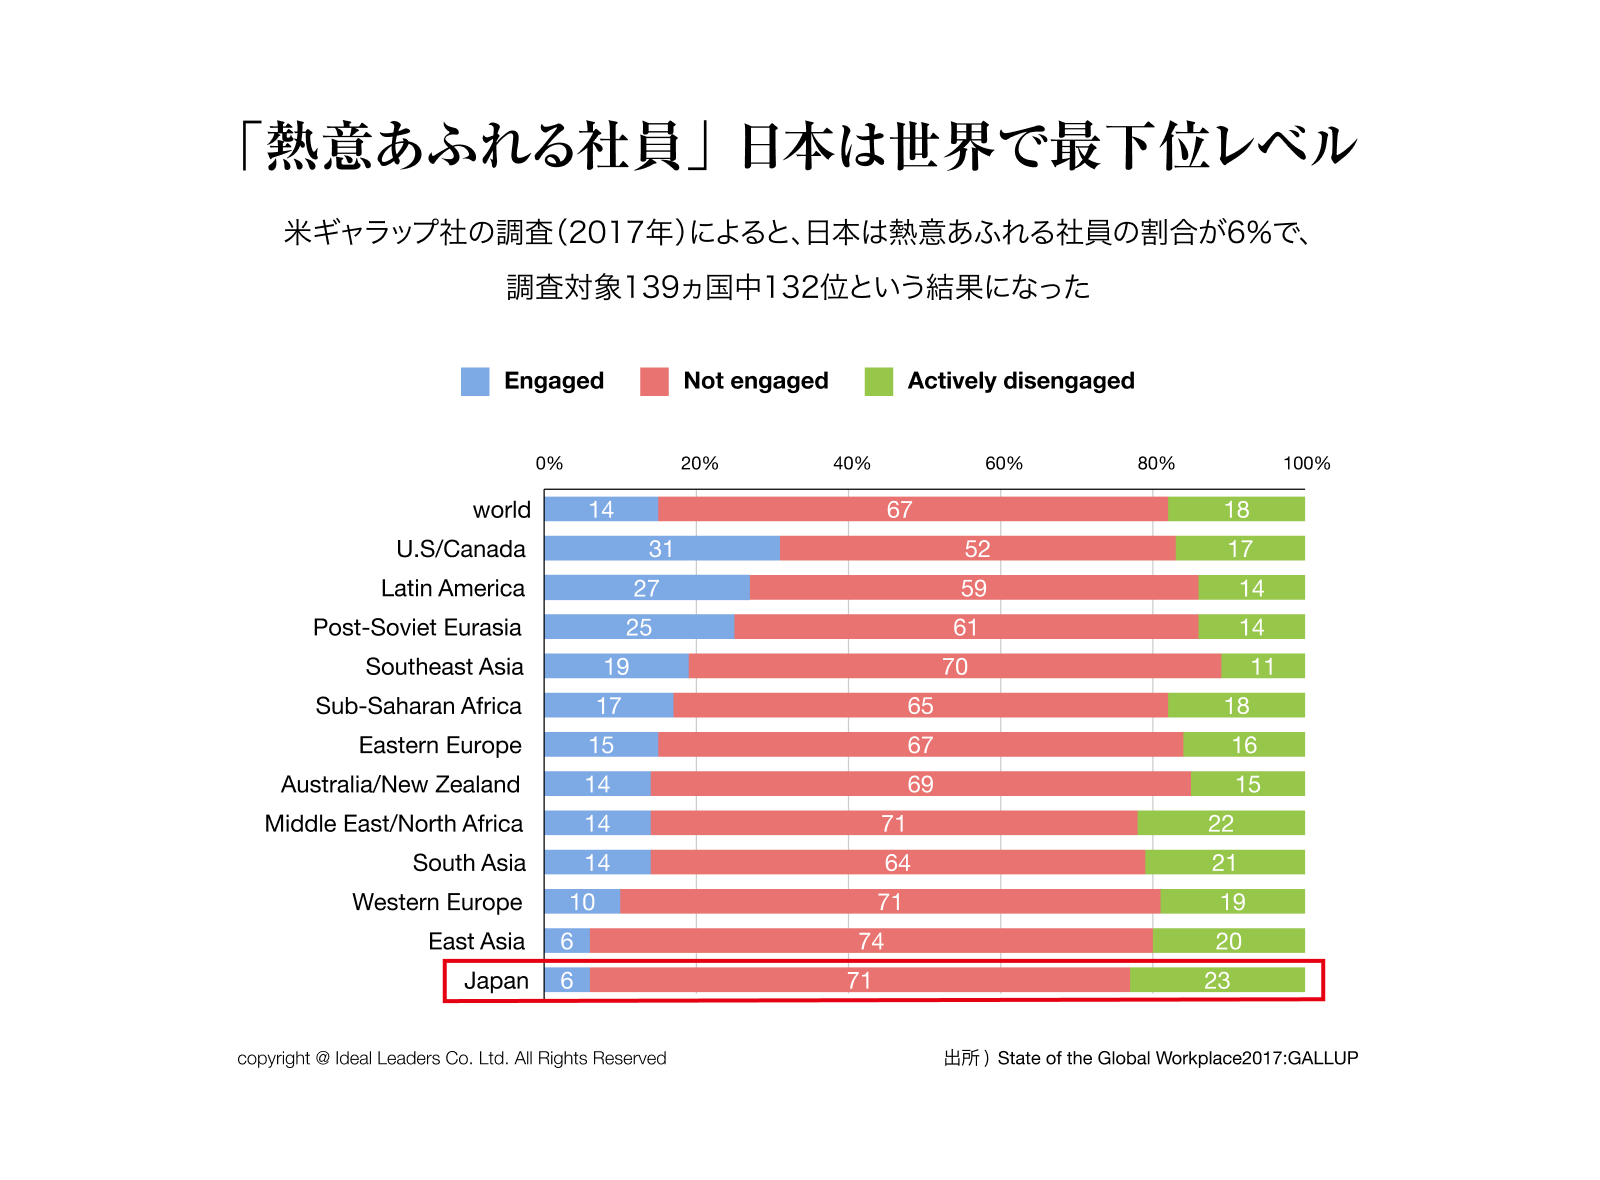 熱意あふれる社員、日本は世界で最下位レベル